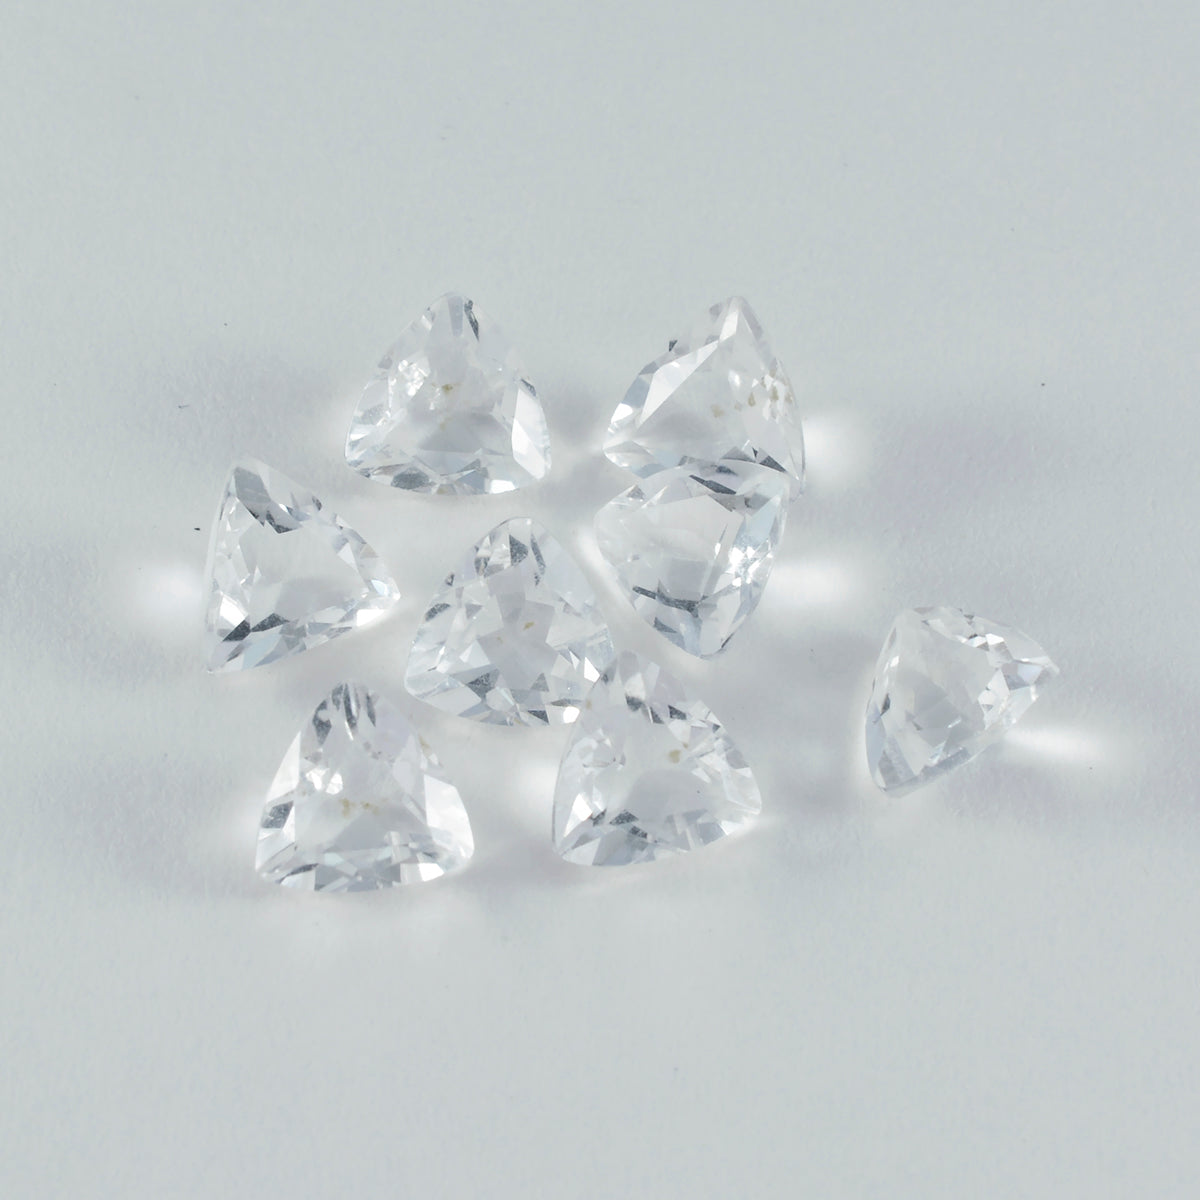 Riyogems 1PC wit kristalkwarts gefacetteerd 9x9 mm biljoen vorm schoonheid kwaliteit losse edelstenen